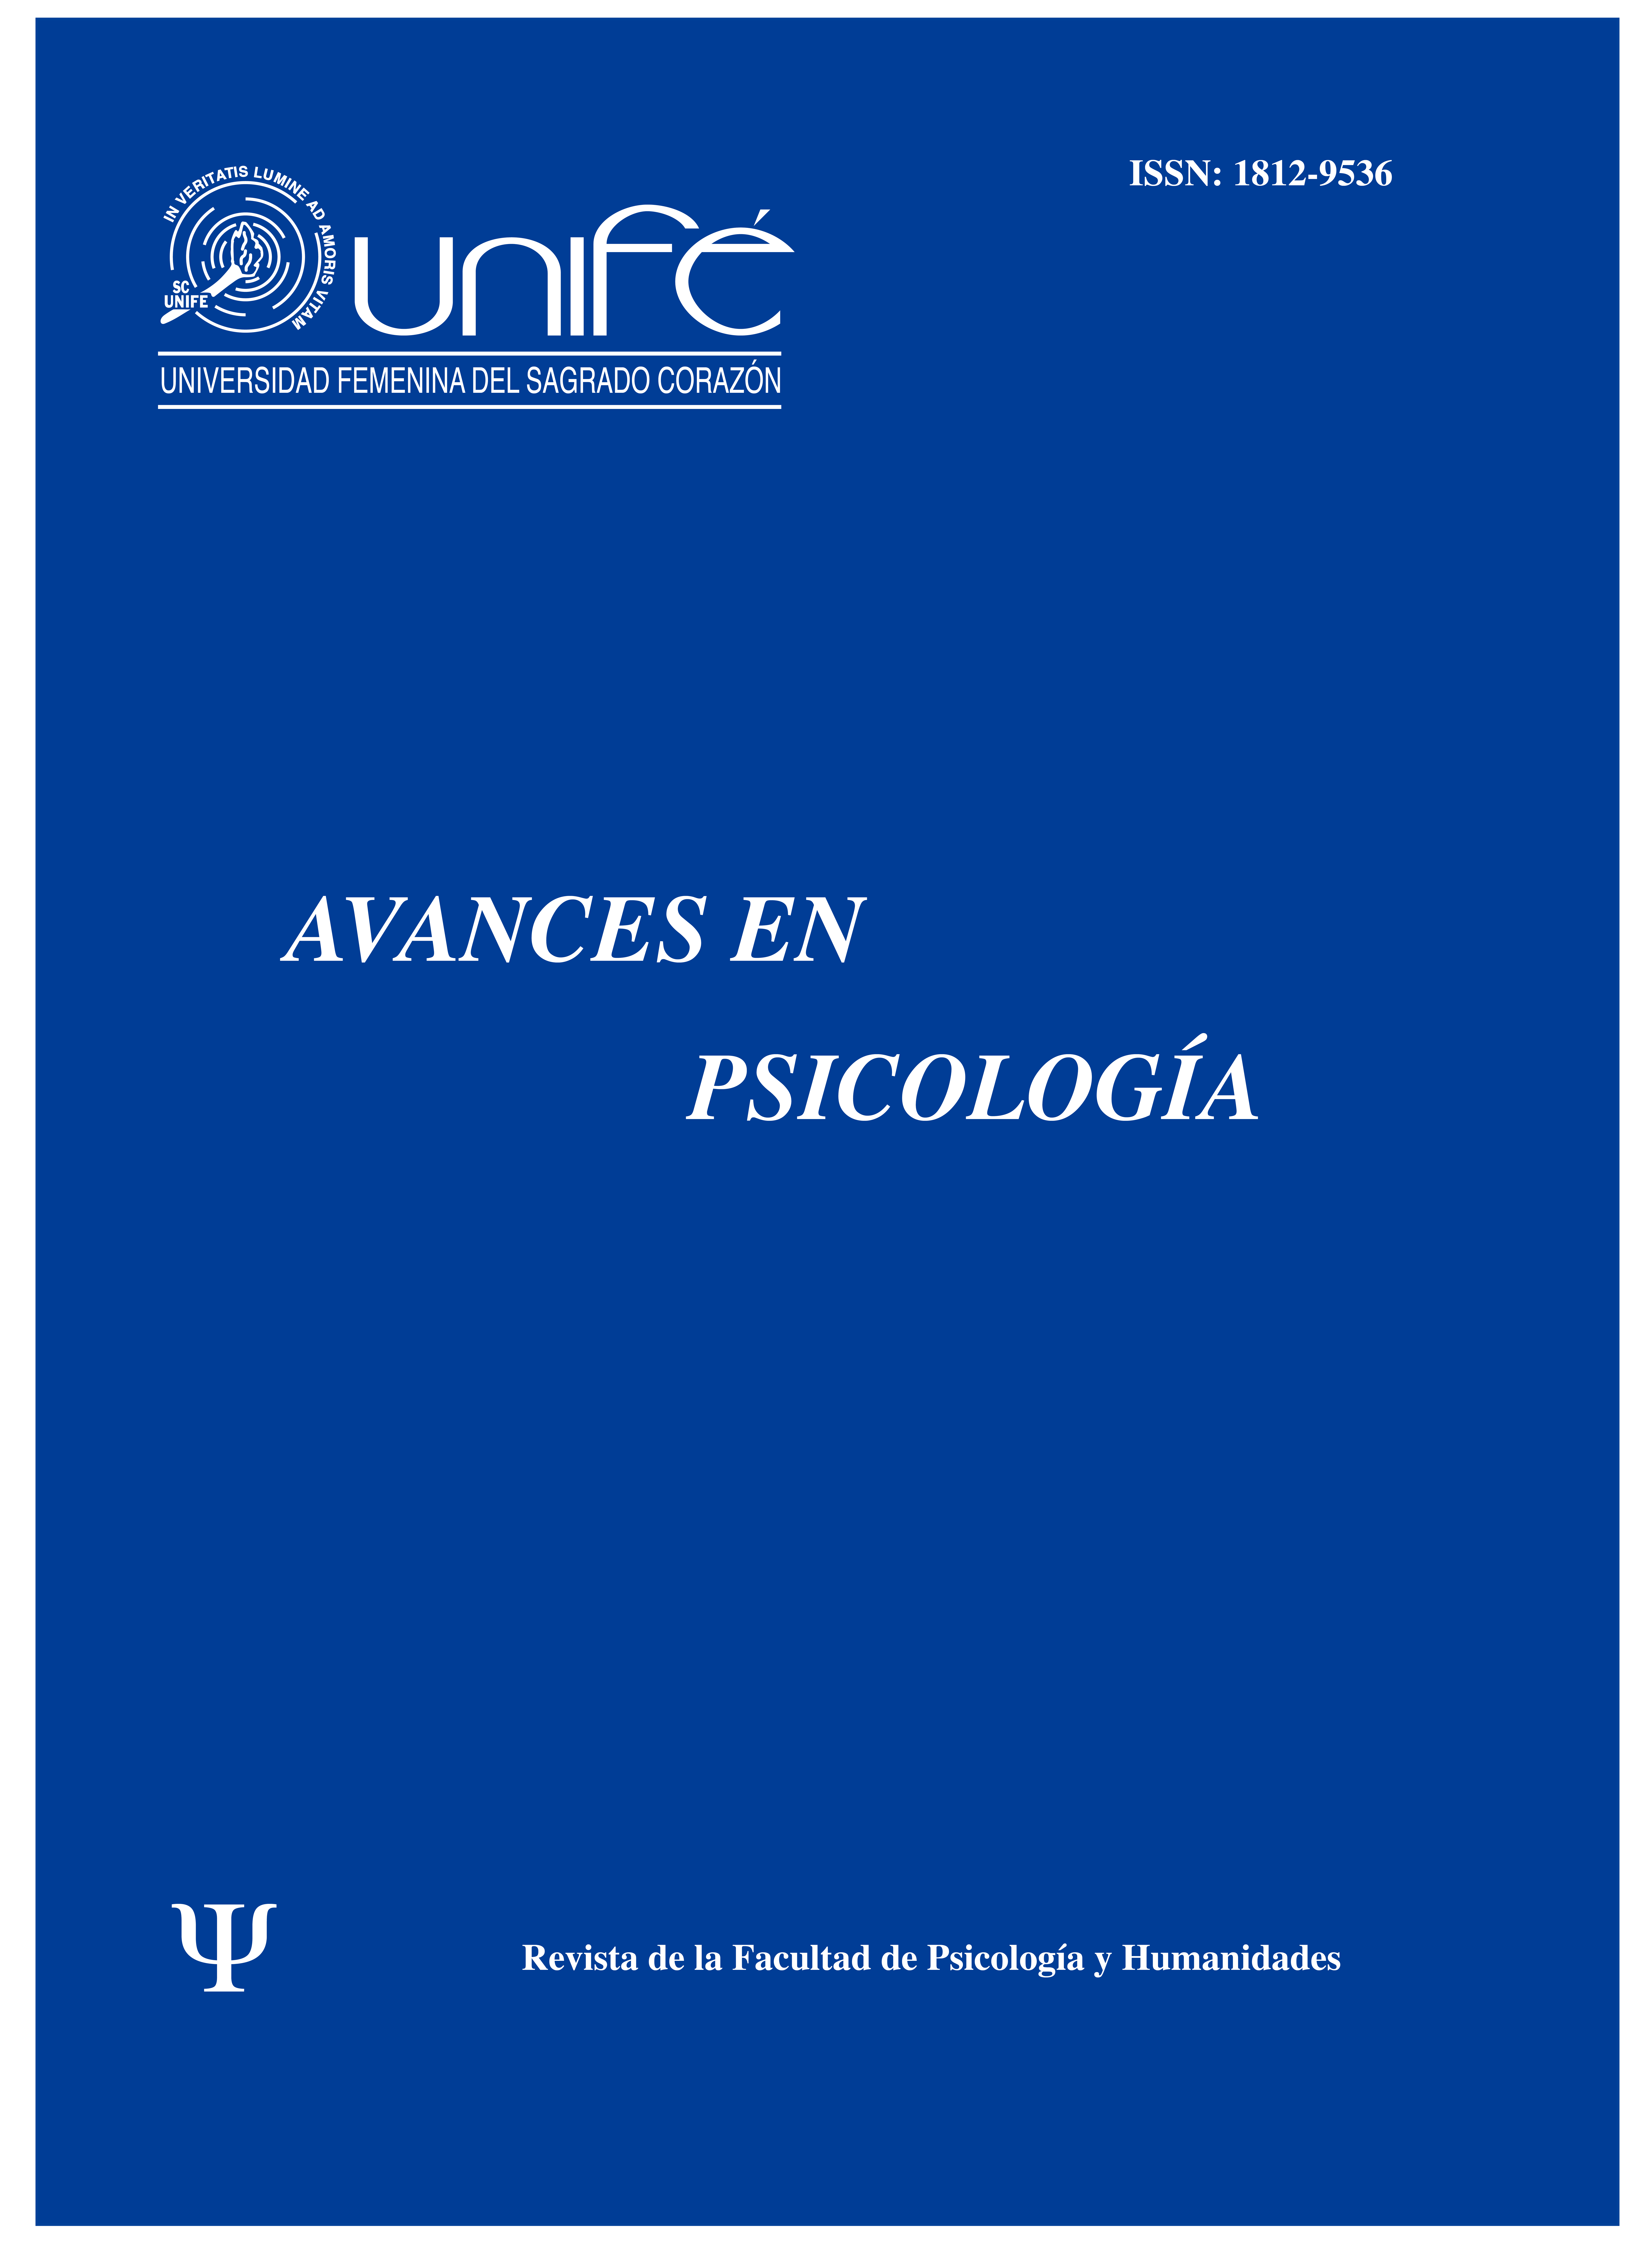 					Ver Vol. 26 Núm. 2 (2018): Avances en Psicología: Revista de la Facultad de Psicología y Humanidades
				